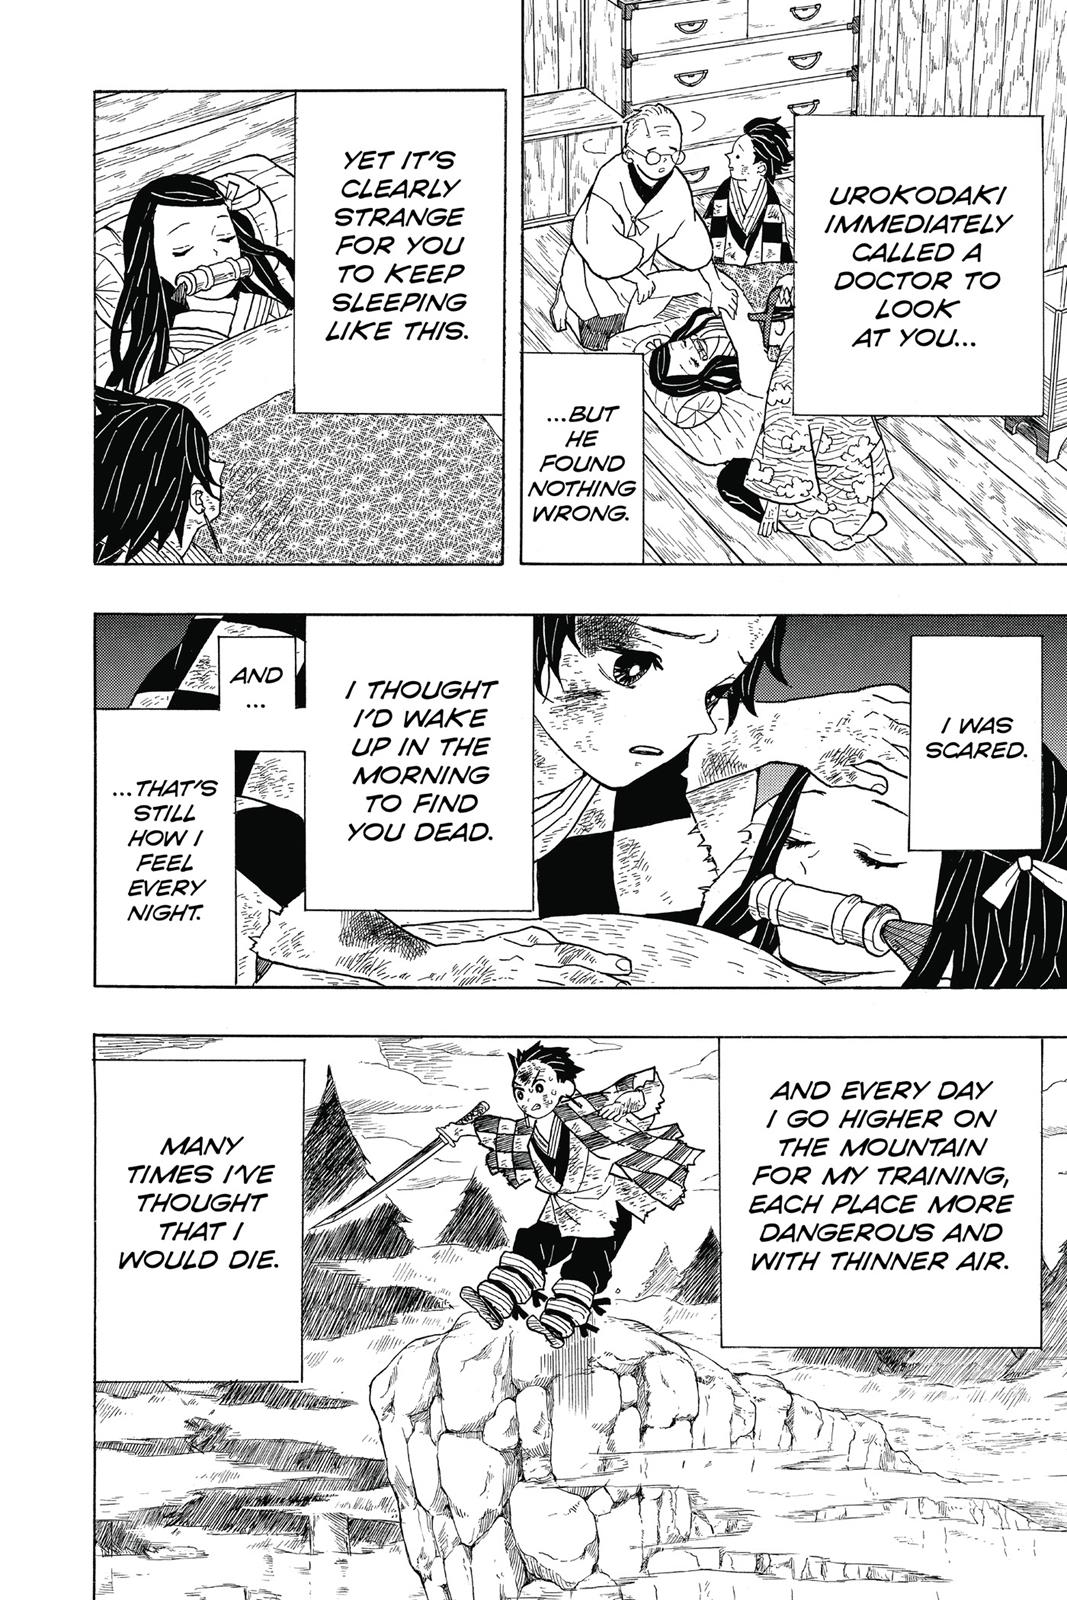 Demon Slayer Manga Manga Chapter - 4 - image 6